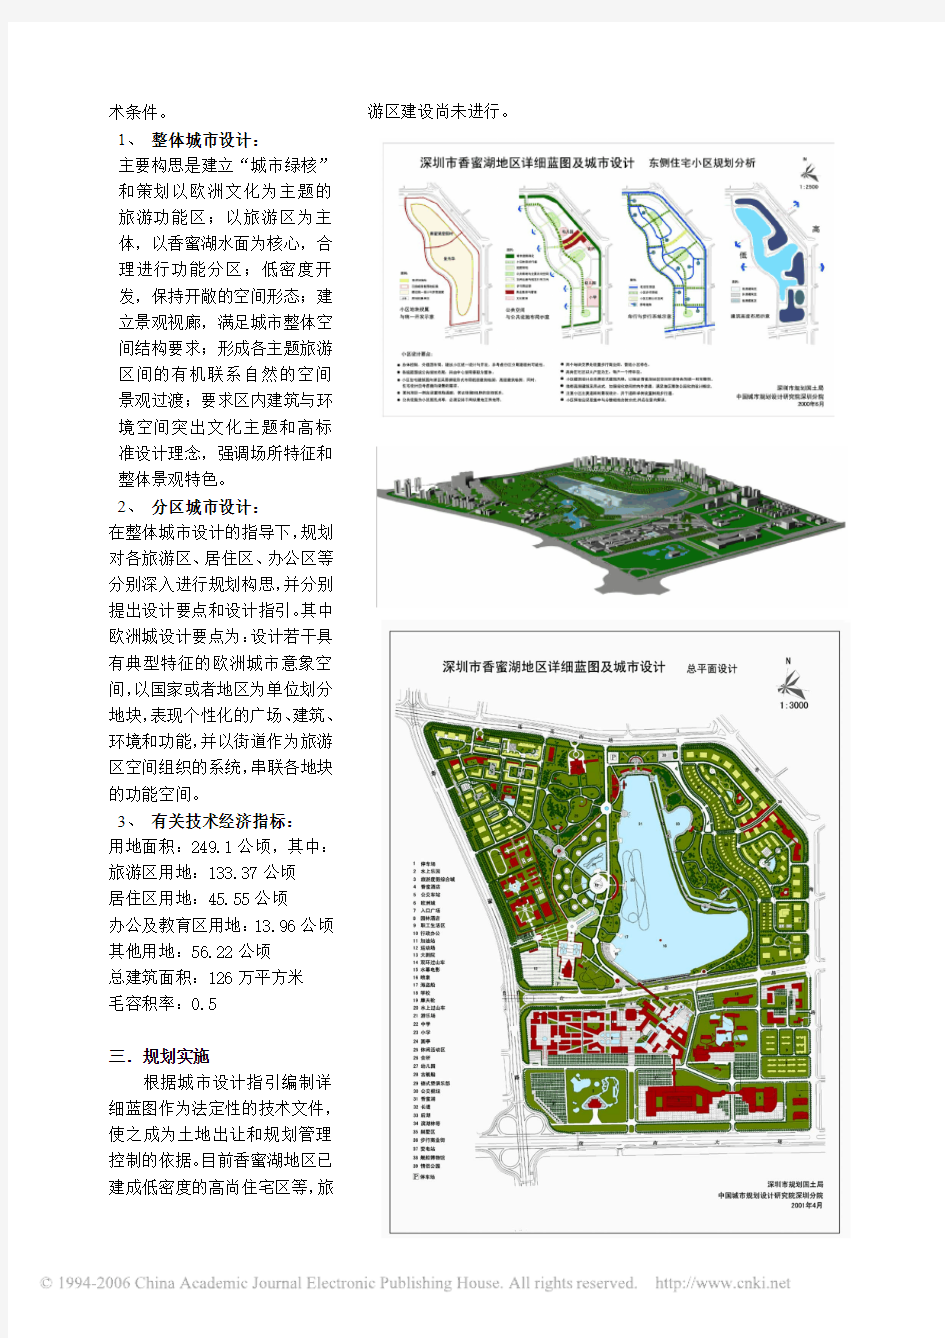 深圳市香蜜湖地区详细蓝图及城市设计